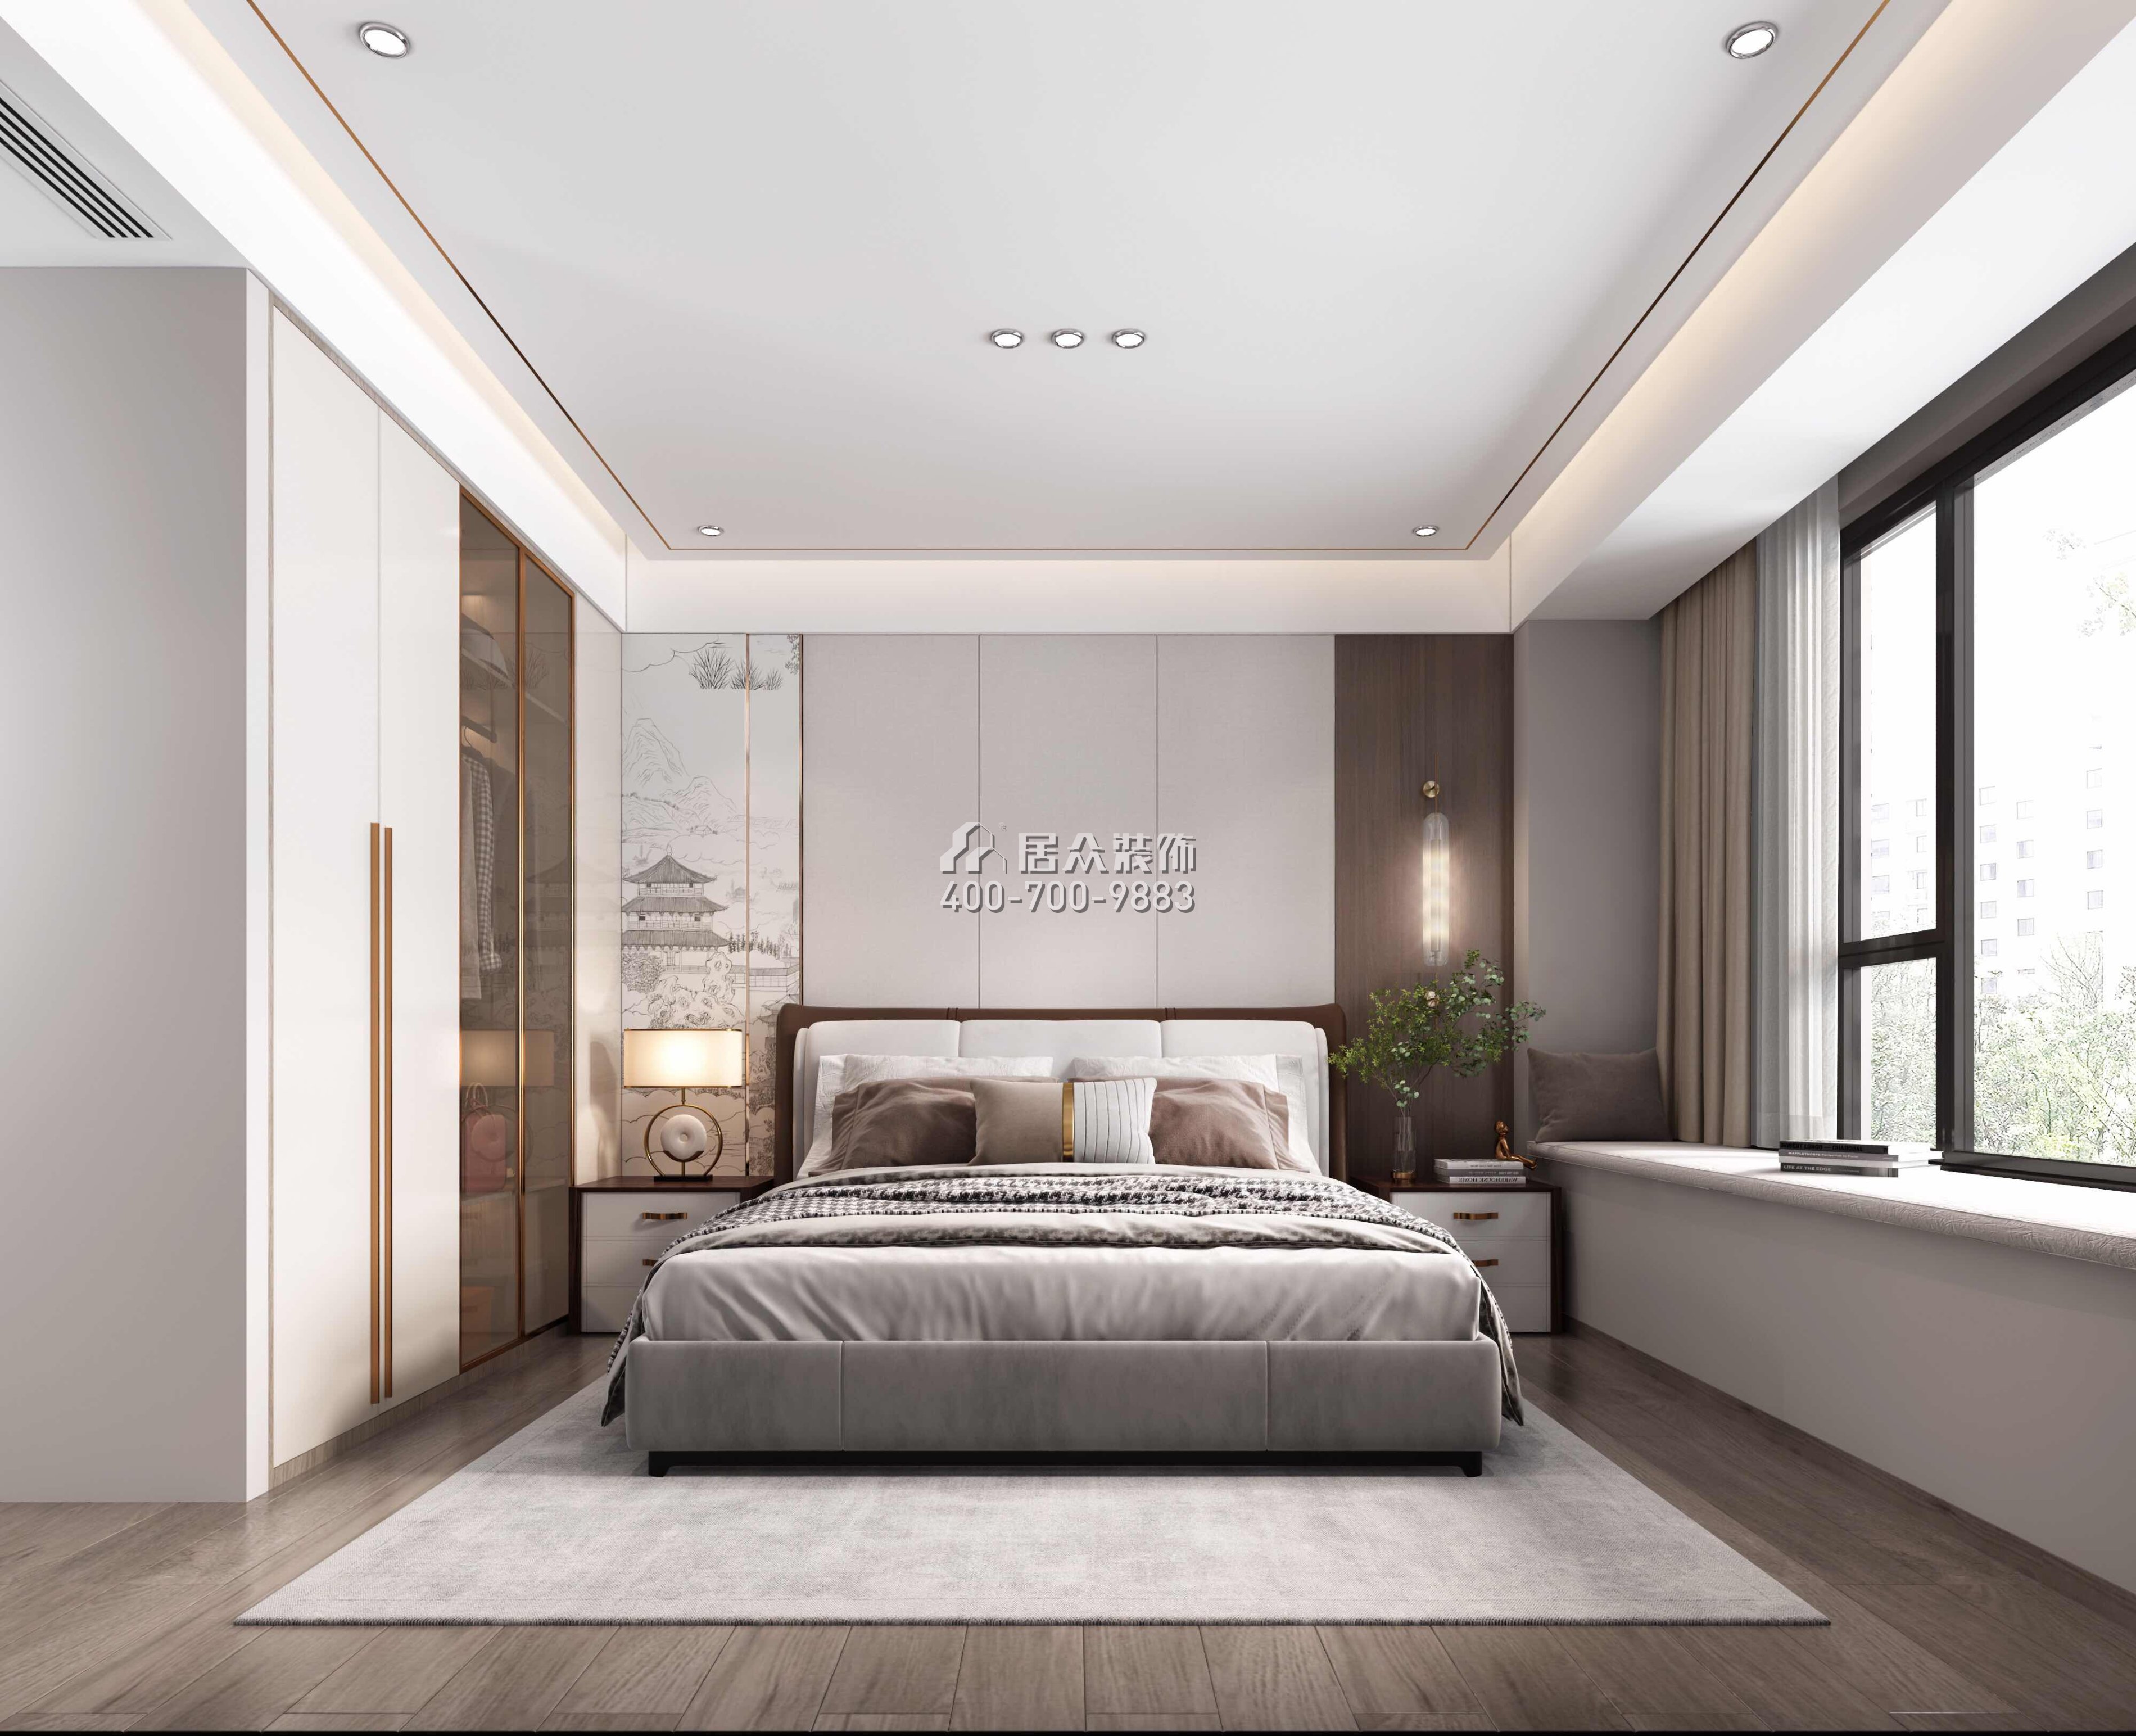 翠湖香山140平方米中式风格平层户型卧室装修效果图